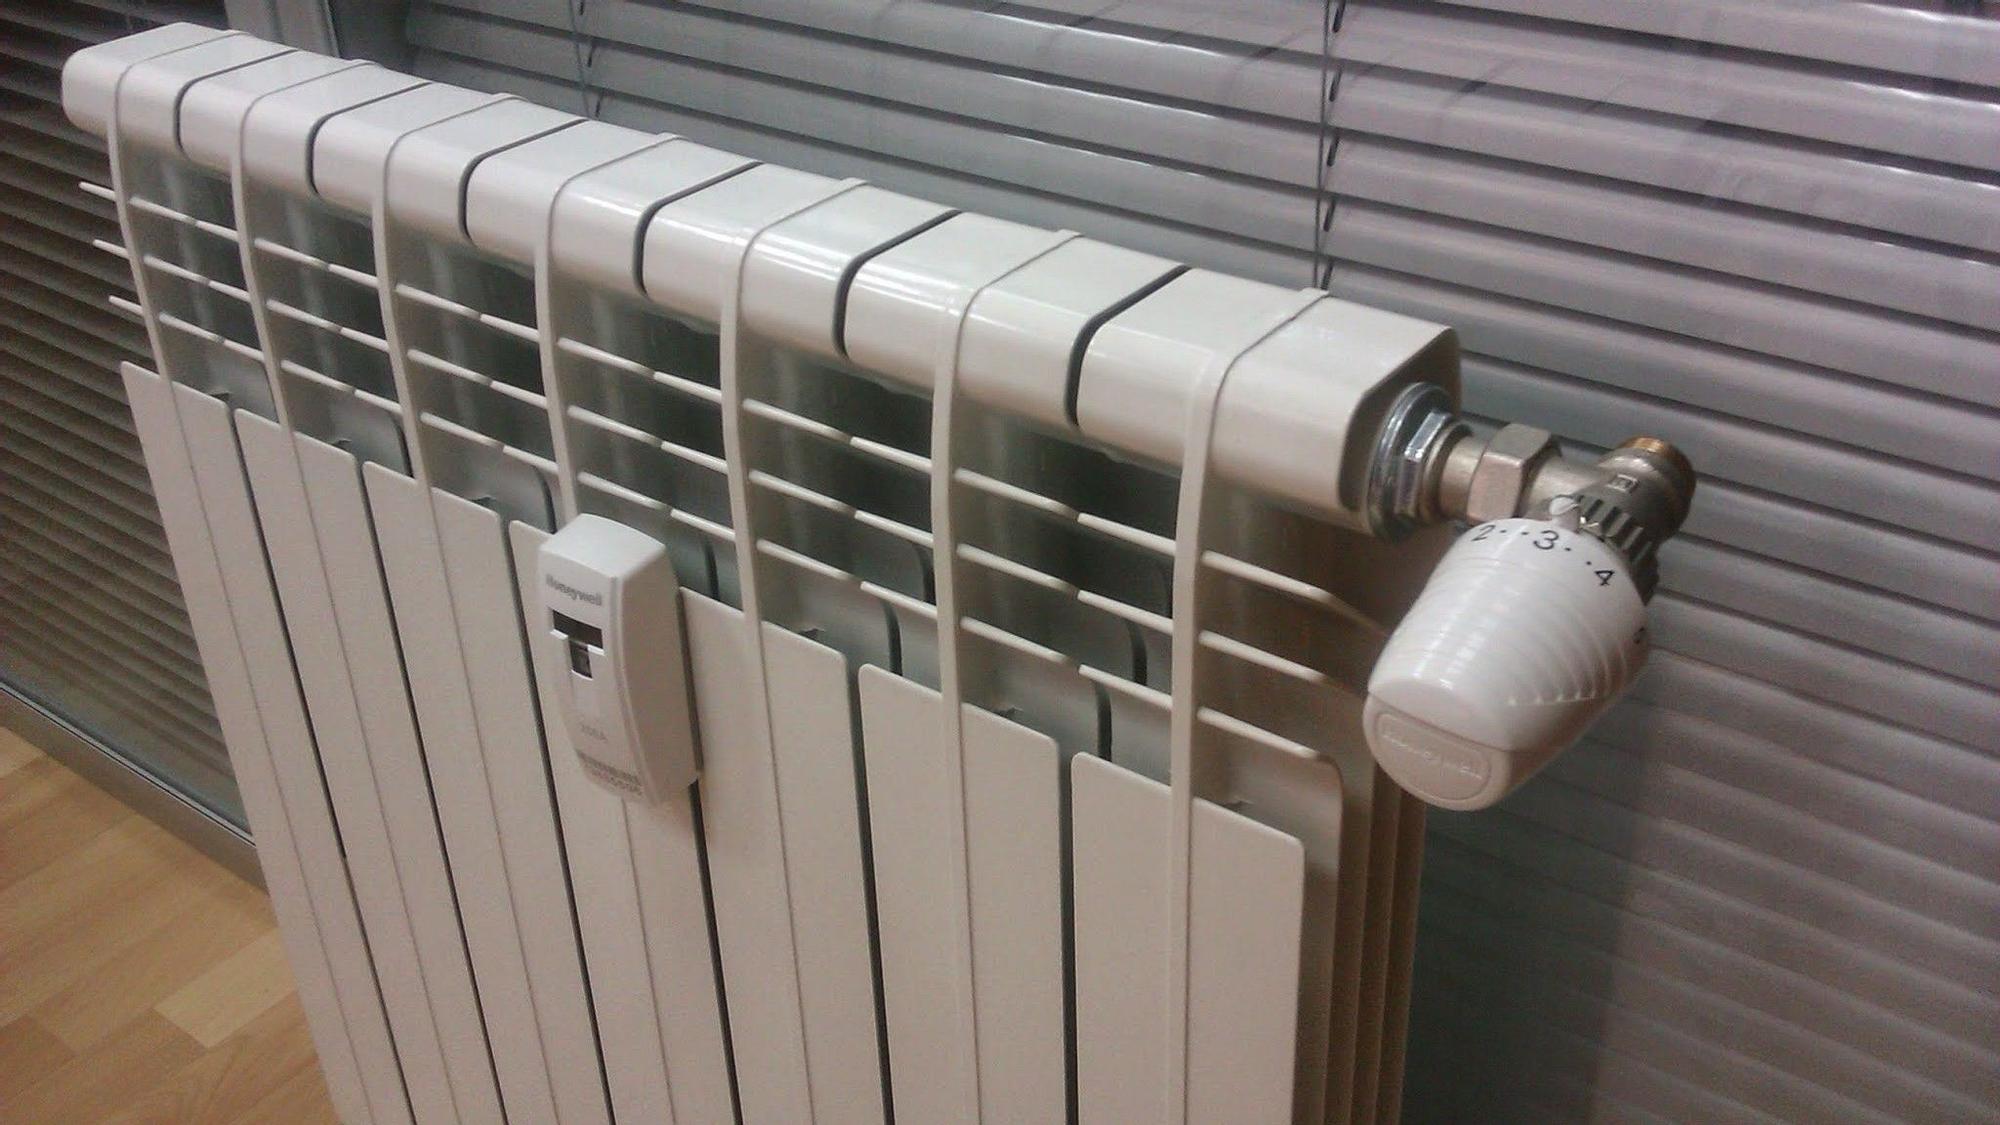 Cómo limpiar los radiadores de casa de una forma rápida y efectiva